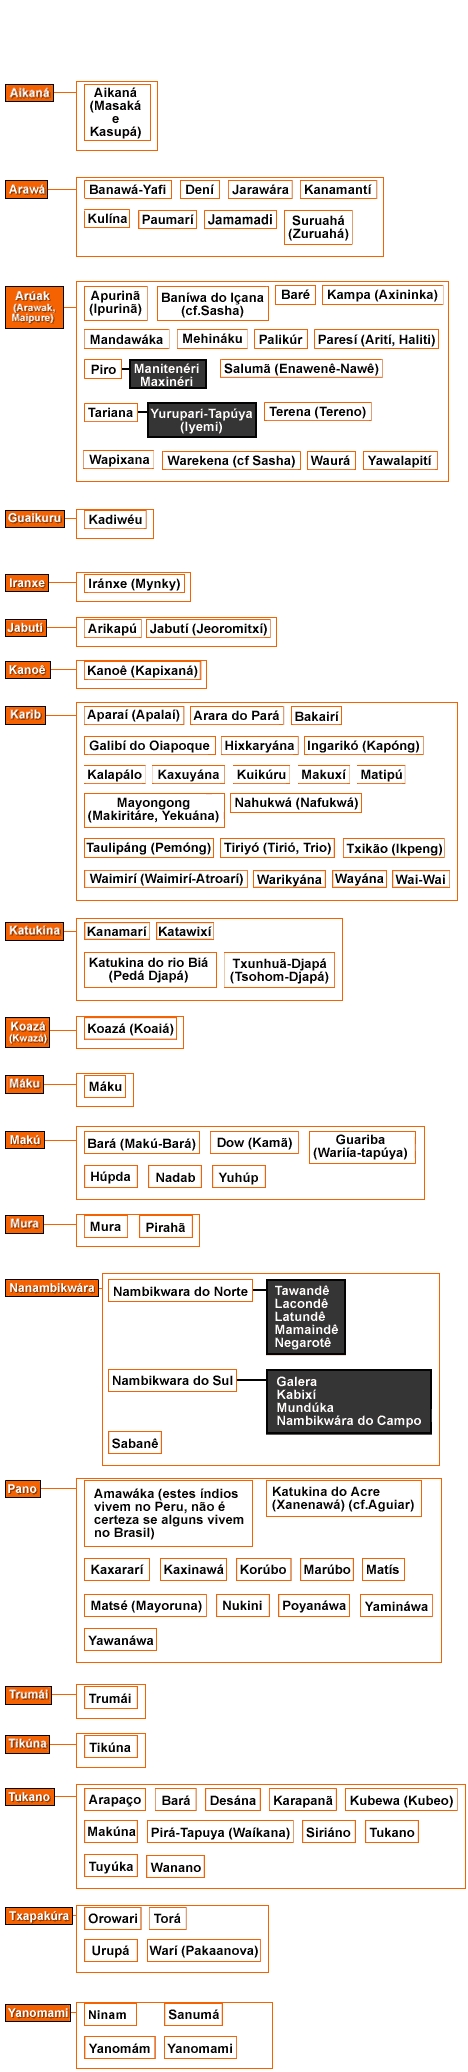 Estudo Comparativo de três línguas Tupis: Tupi, Guarani e Karitiana